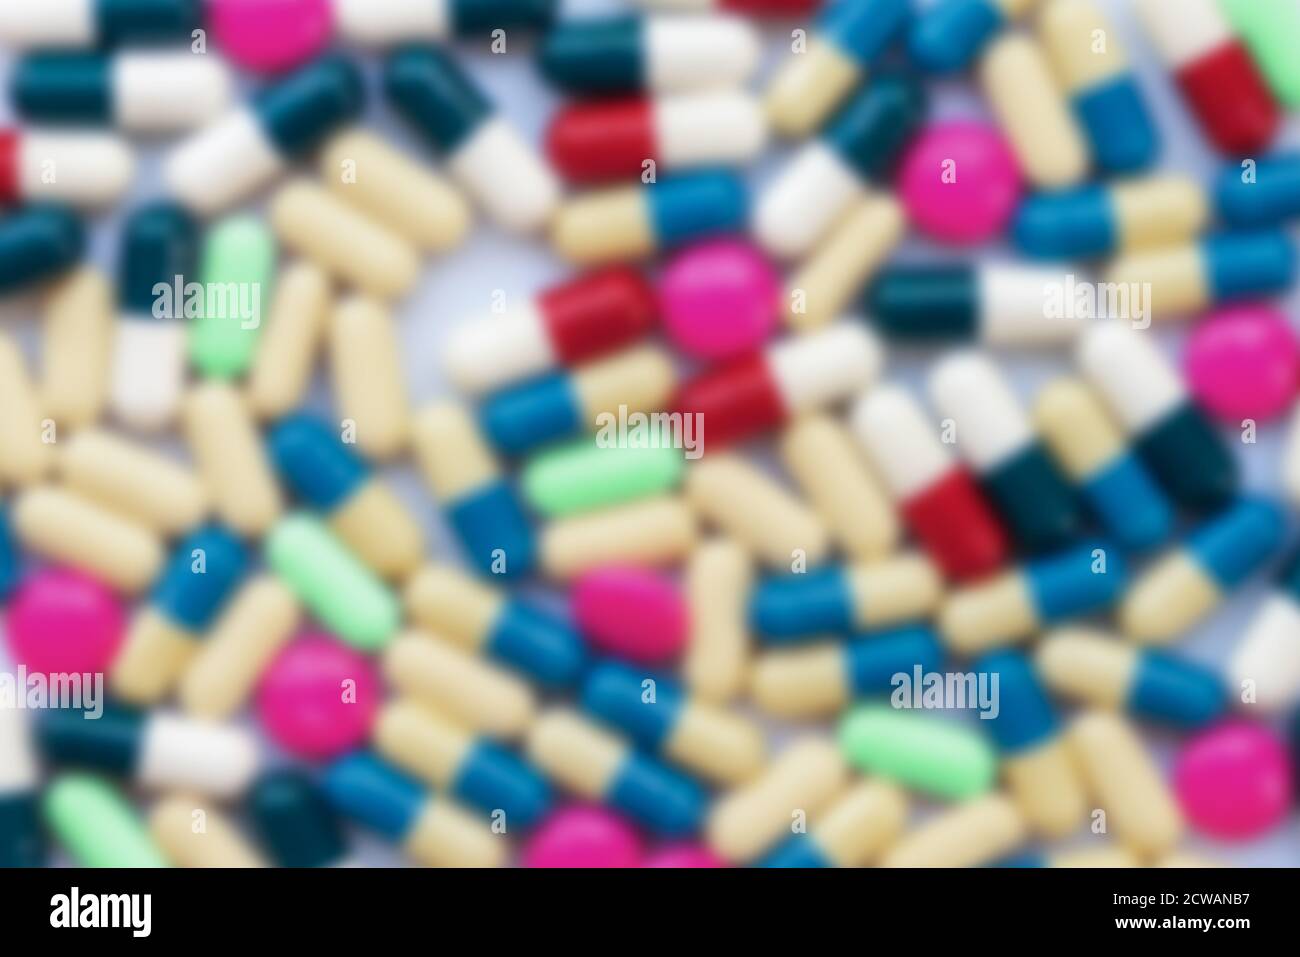 Contexte des pilules colorées floues, la santé et les médicaments, la toxicomanie, le concept de l'industrie pharmaceutique Banque D'Images